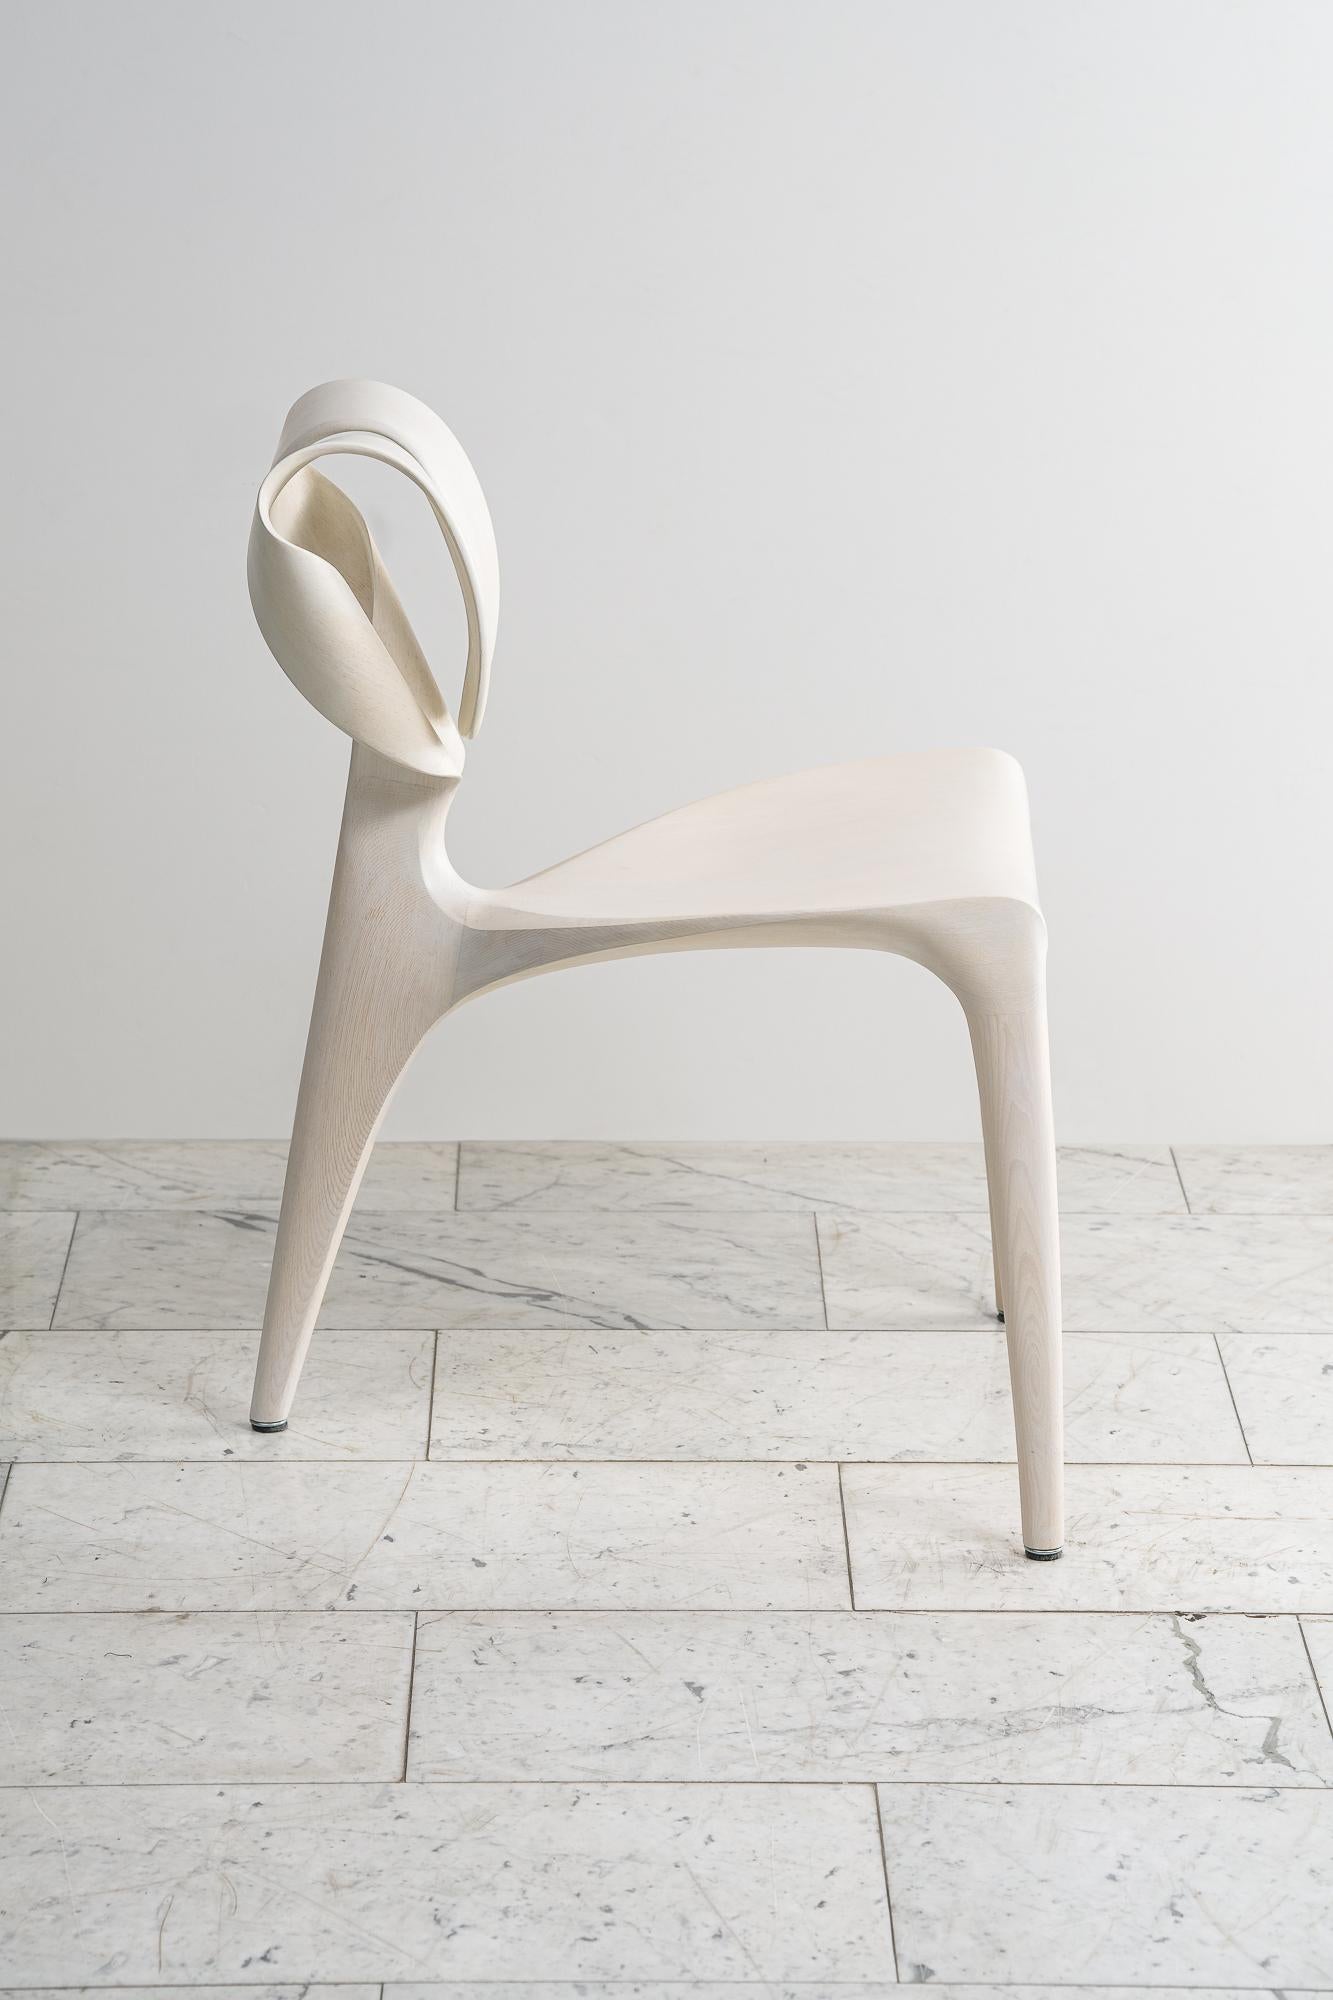 Le designer et fabricant de meubles autodidacte Morten Stenbæk met l'accent sur l'équilibre parfait entre l'esthétique et la fonctionnalité, en fusionnant l'élégance et le design ergonomique. Travaillant de manière intuitive, il allie une attention